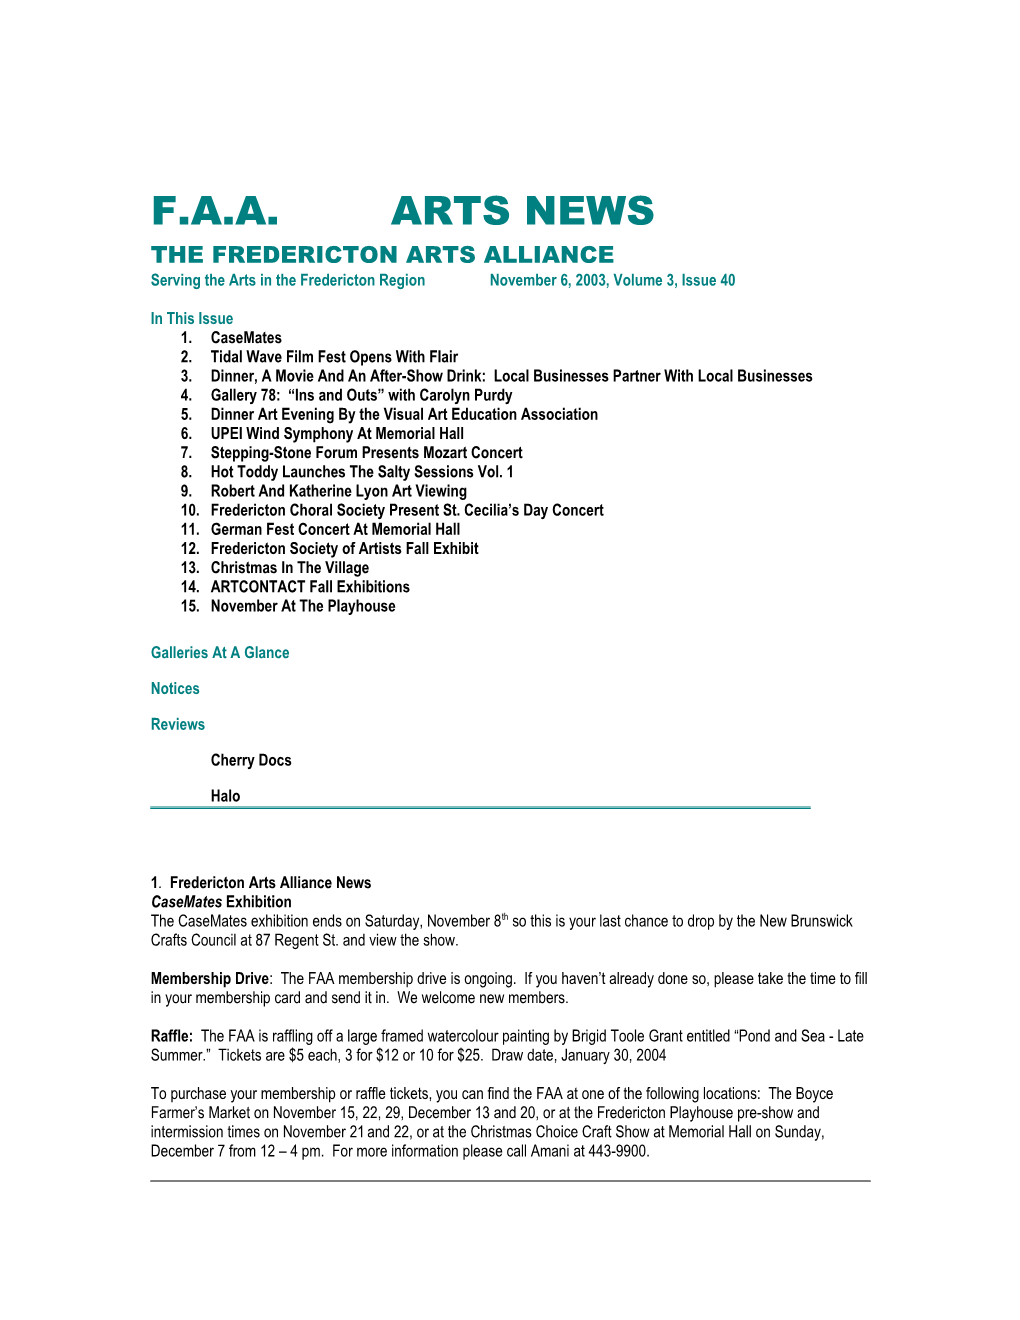 Faa Arts News